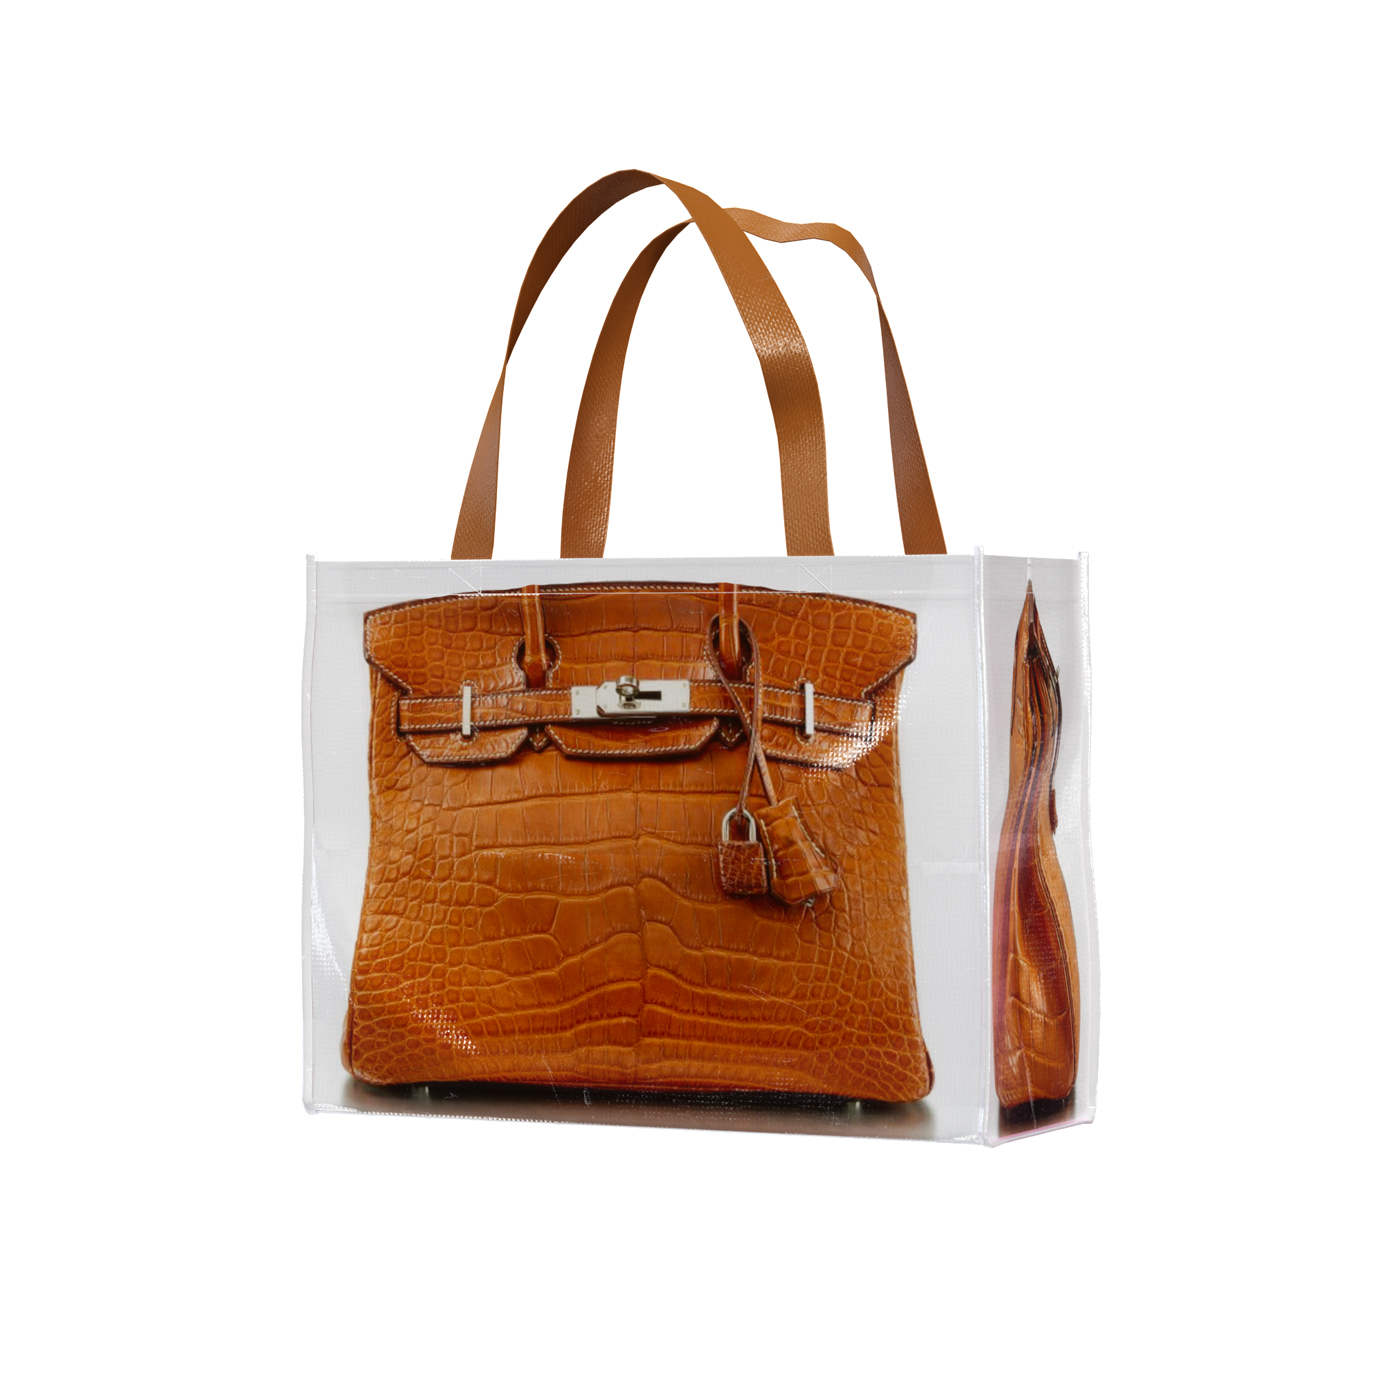 Bag Snob is coming soon  Bag snob, Met gala, Hermes handbags